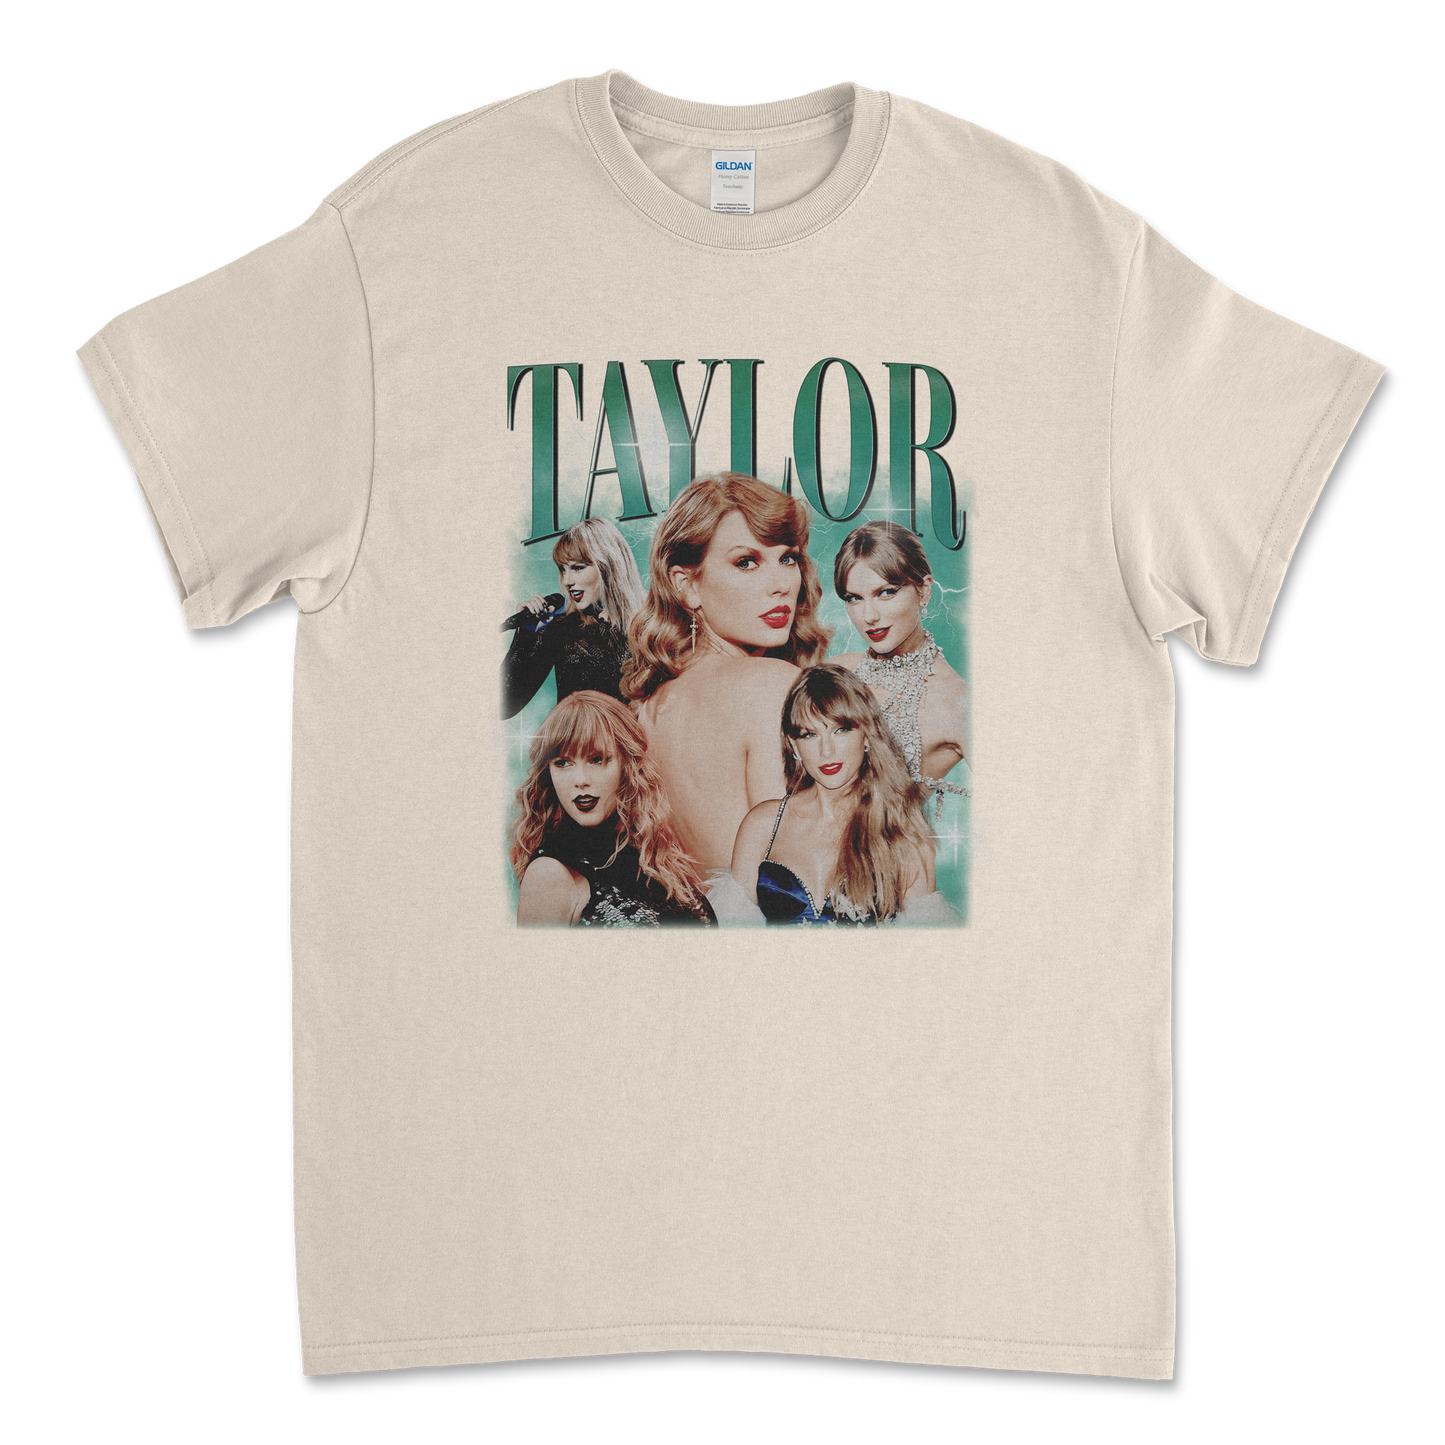 Taylor Swift 90s Bootleg T-Shirt